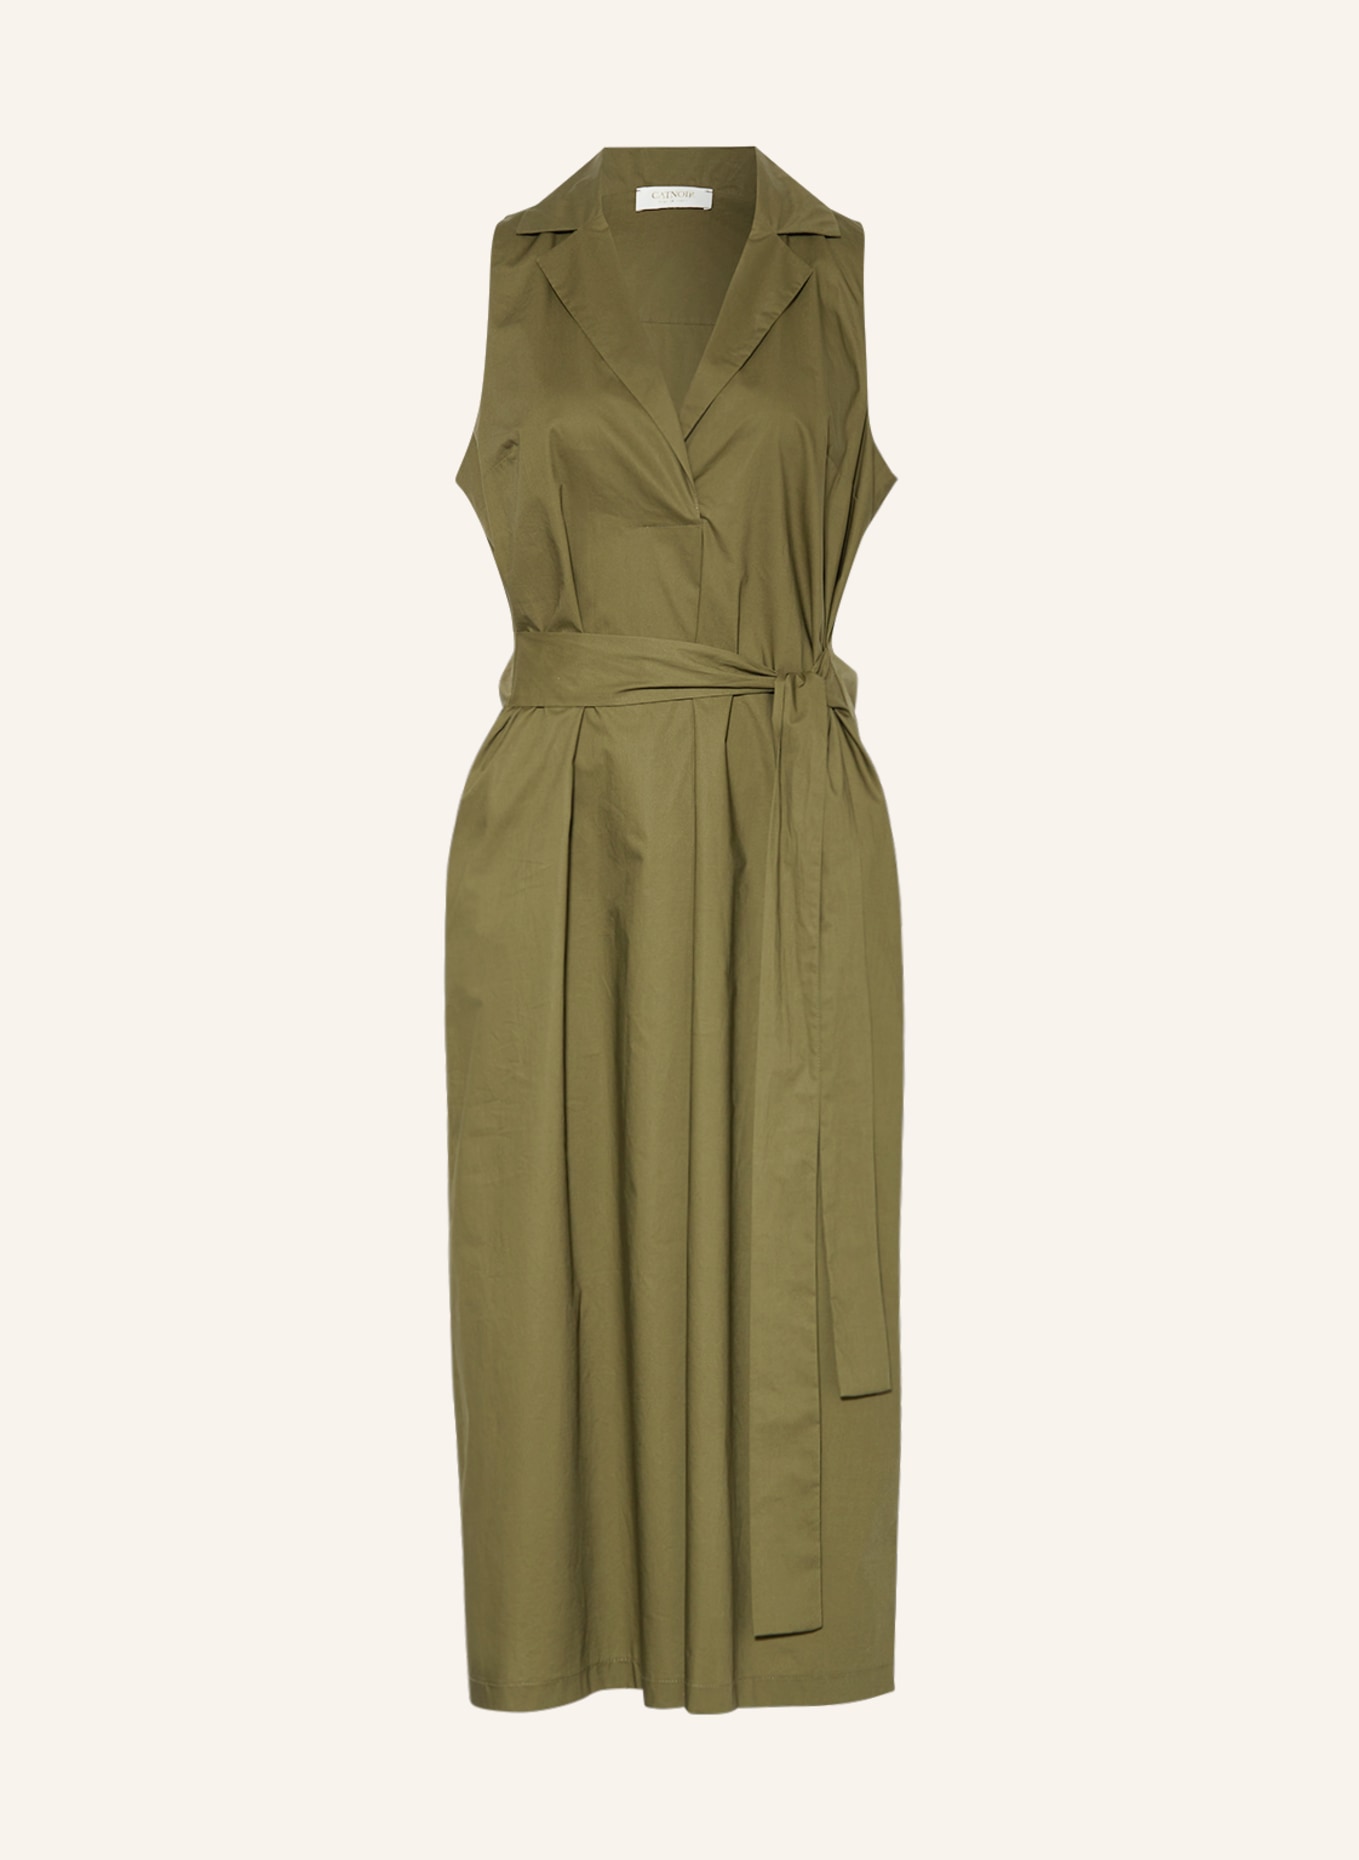 CATNOIR Dress, Color: OLIVE (Image 1)